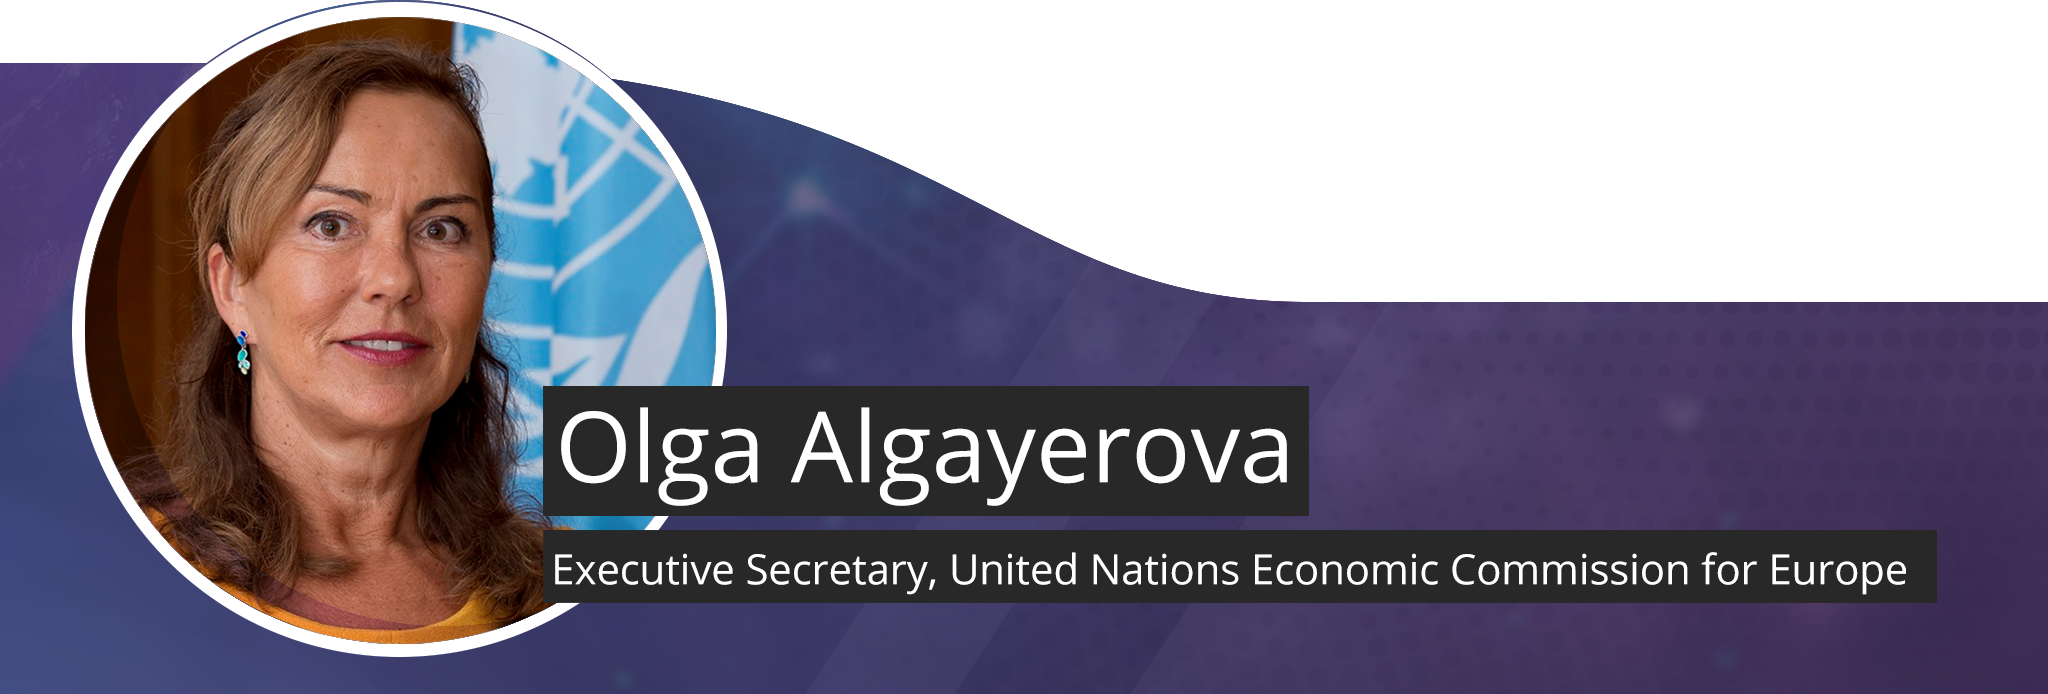 Headshot of Olga Algayerova, Executive Secretary, United Nations Economic Commission for Europe